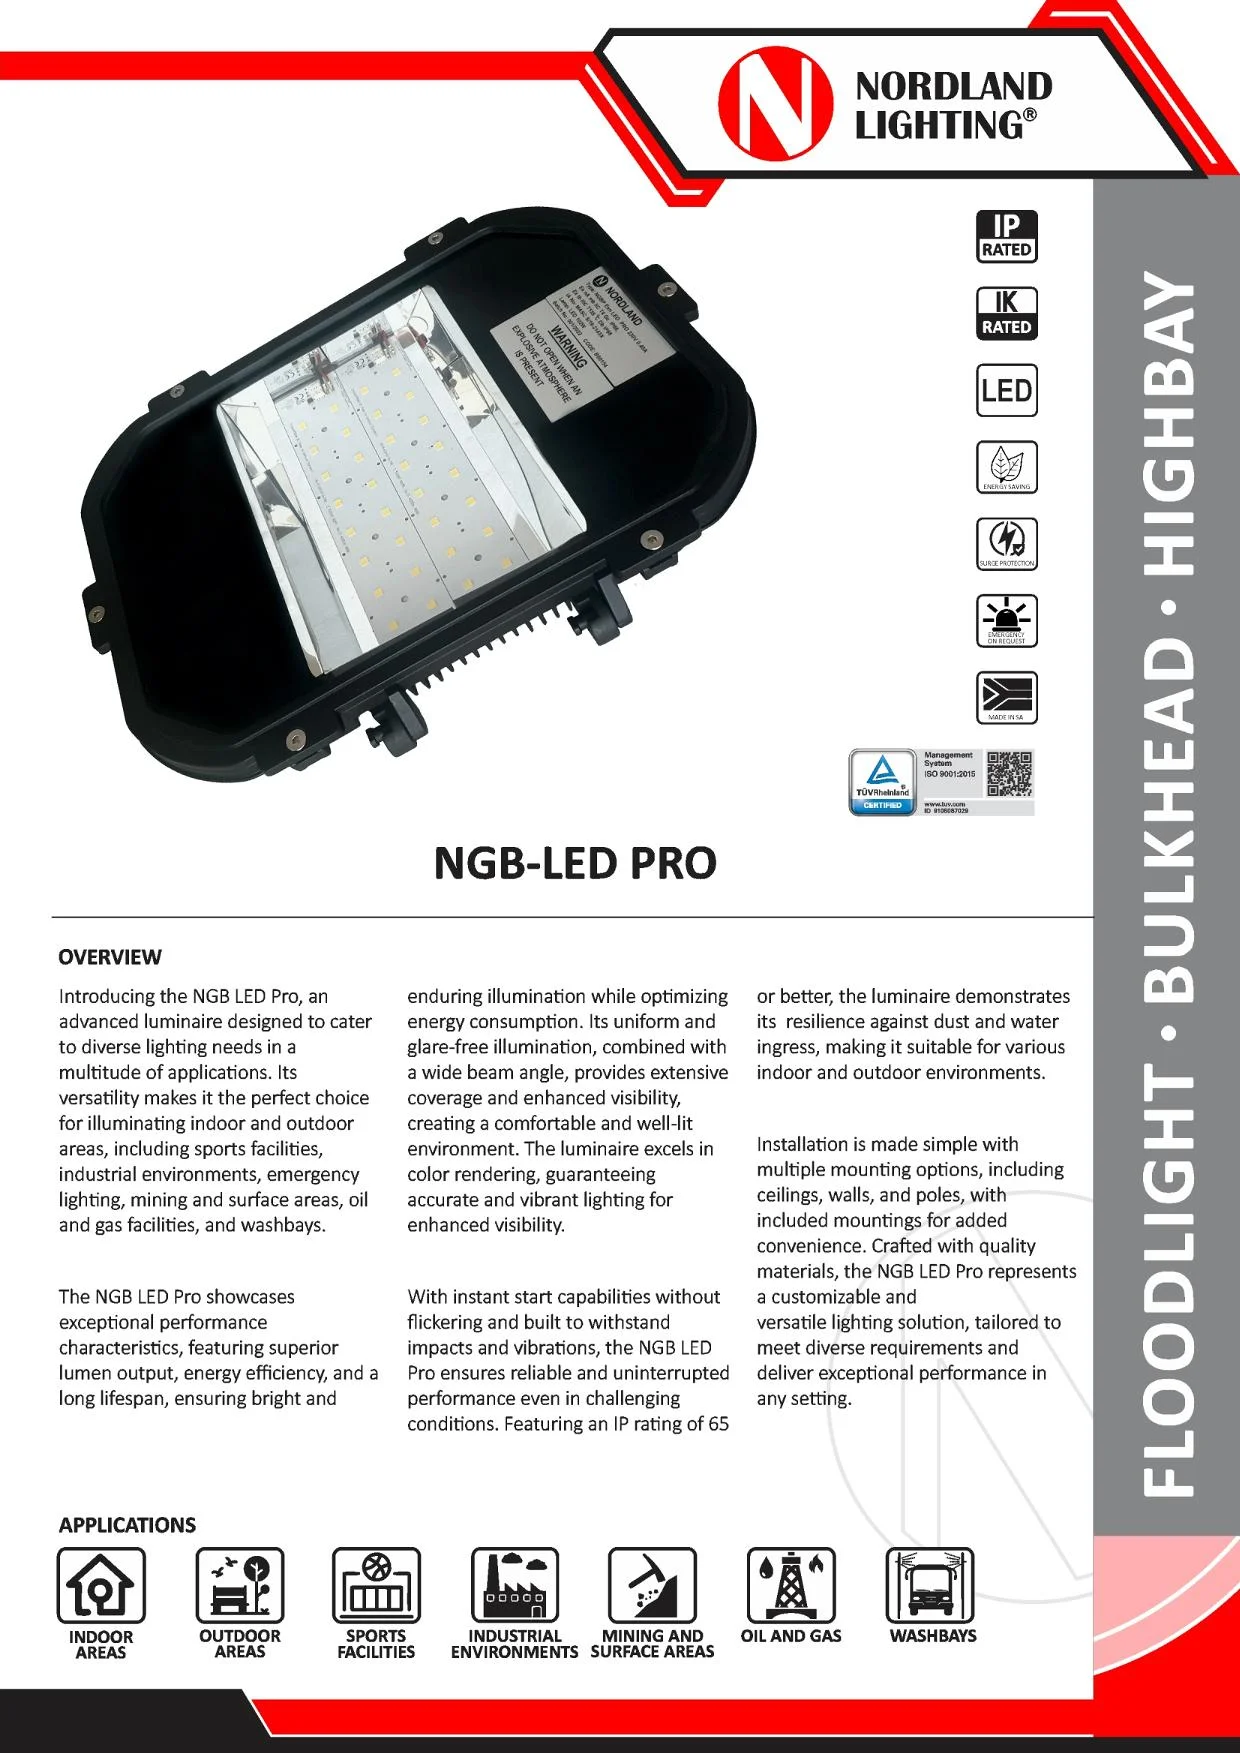 NL12A Nordland NGB-LED PRO Lumianire